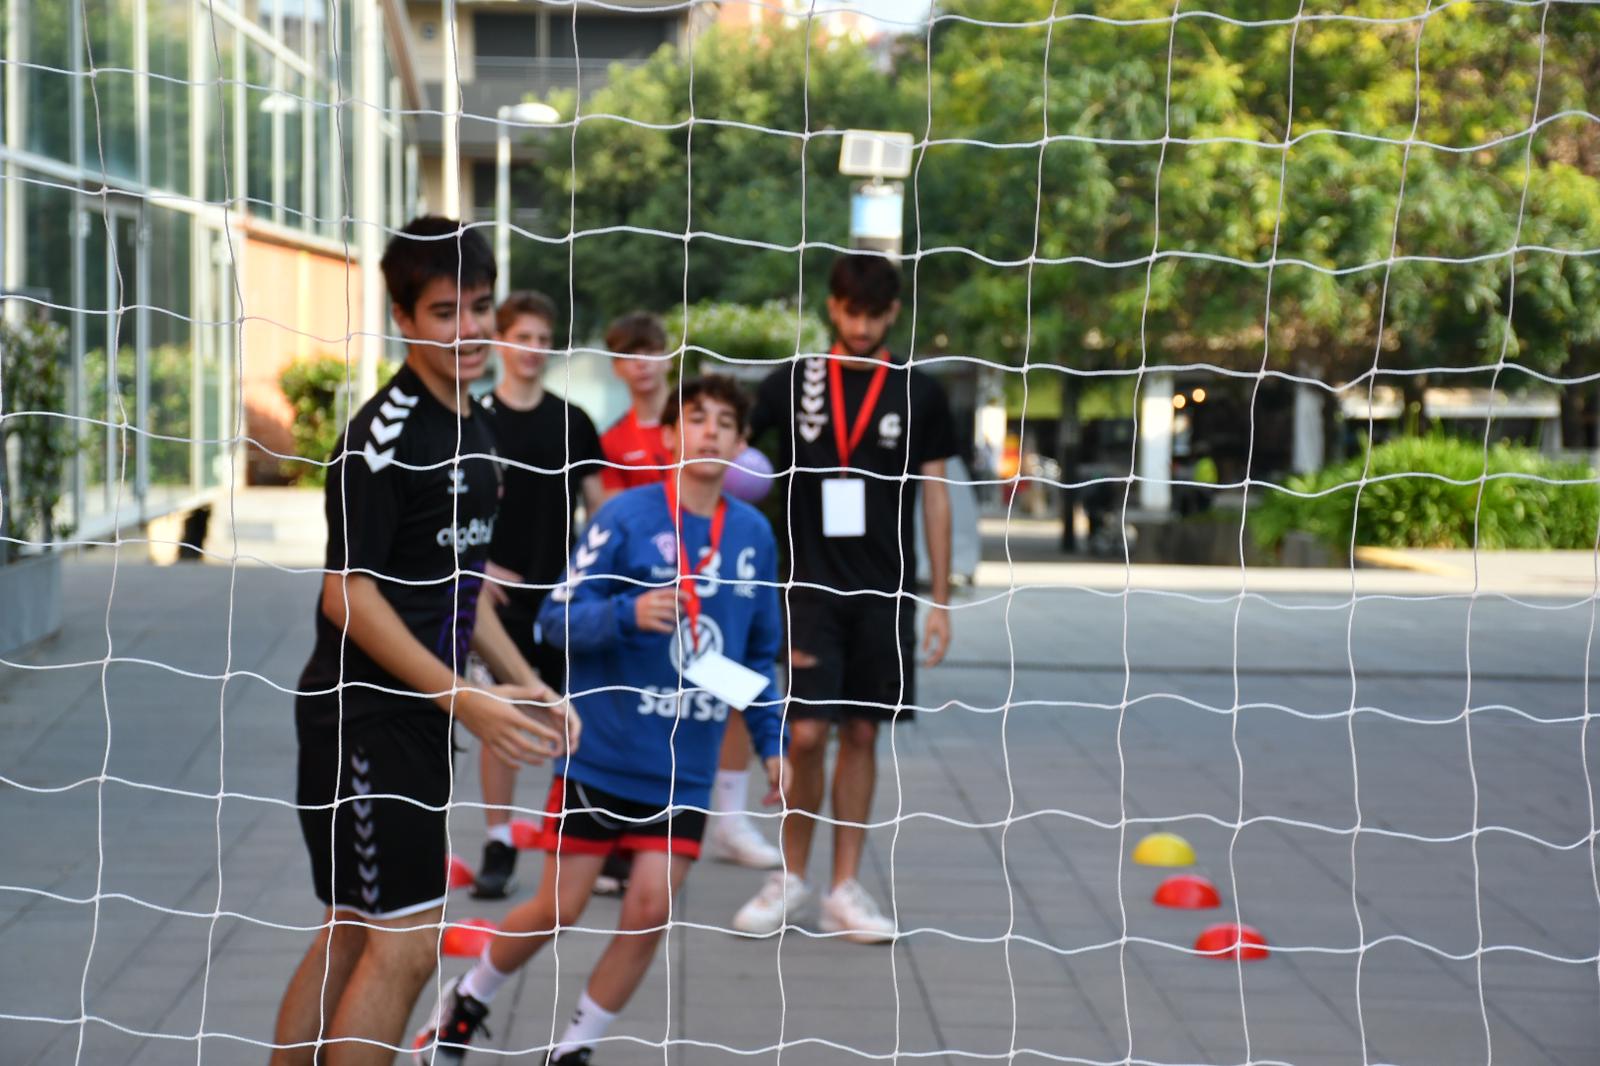 Activitats i partits de promoció d'handbol durant la Copa de les Nacions. FOTO: CH Sant Cugat